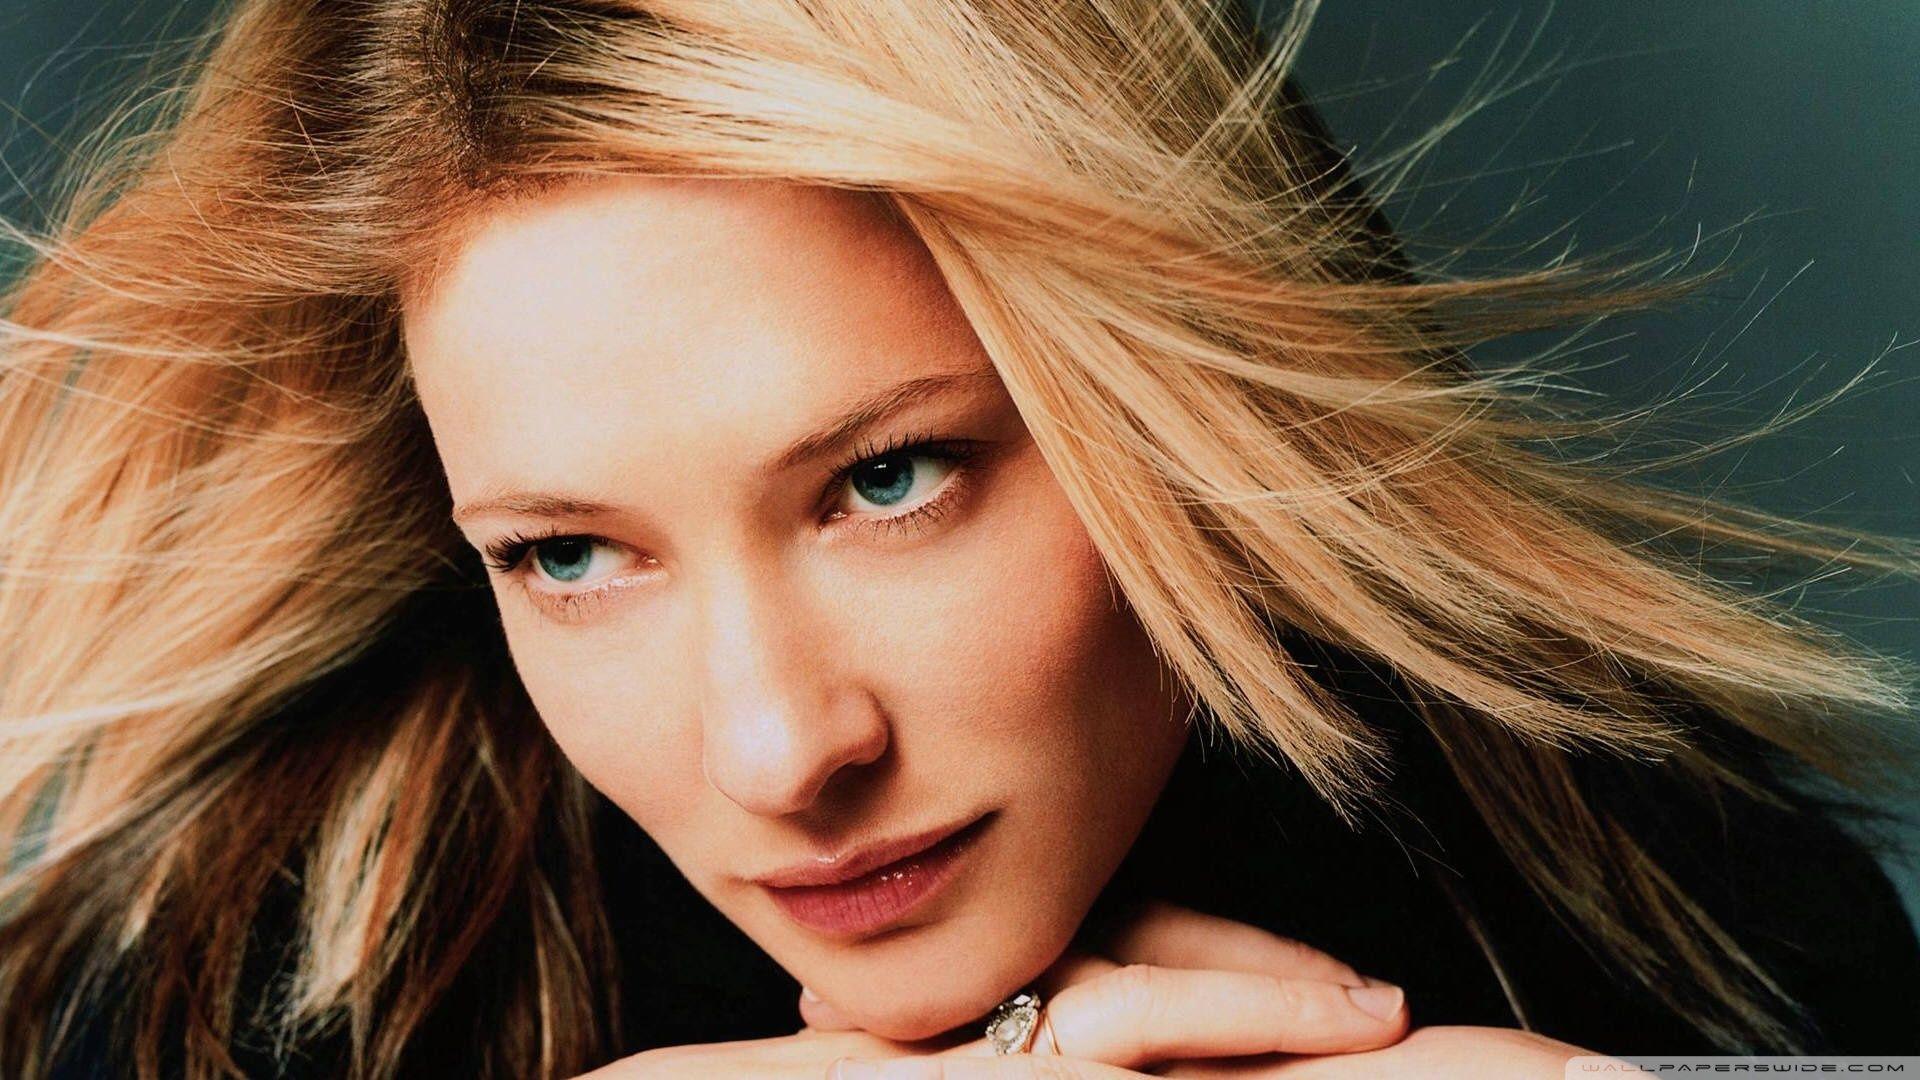 Cate Blanchett Portrait 2K desk 4K wallpapers Widescreen High